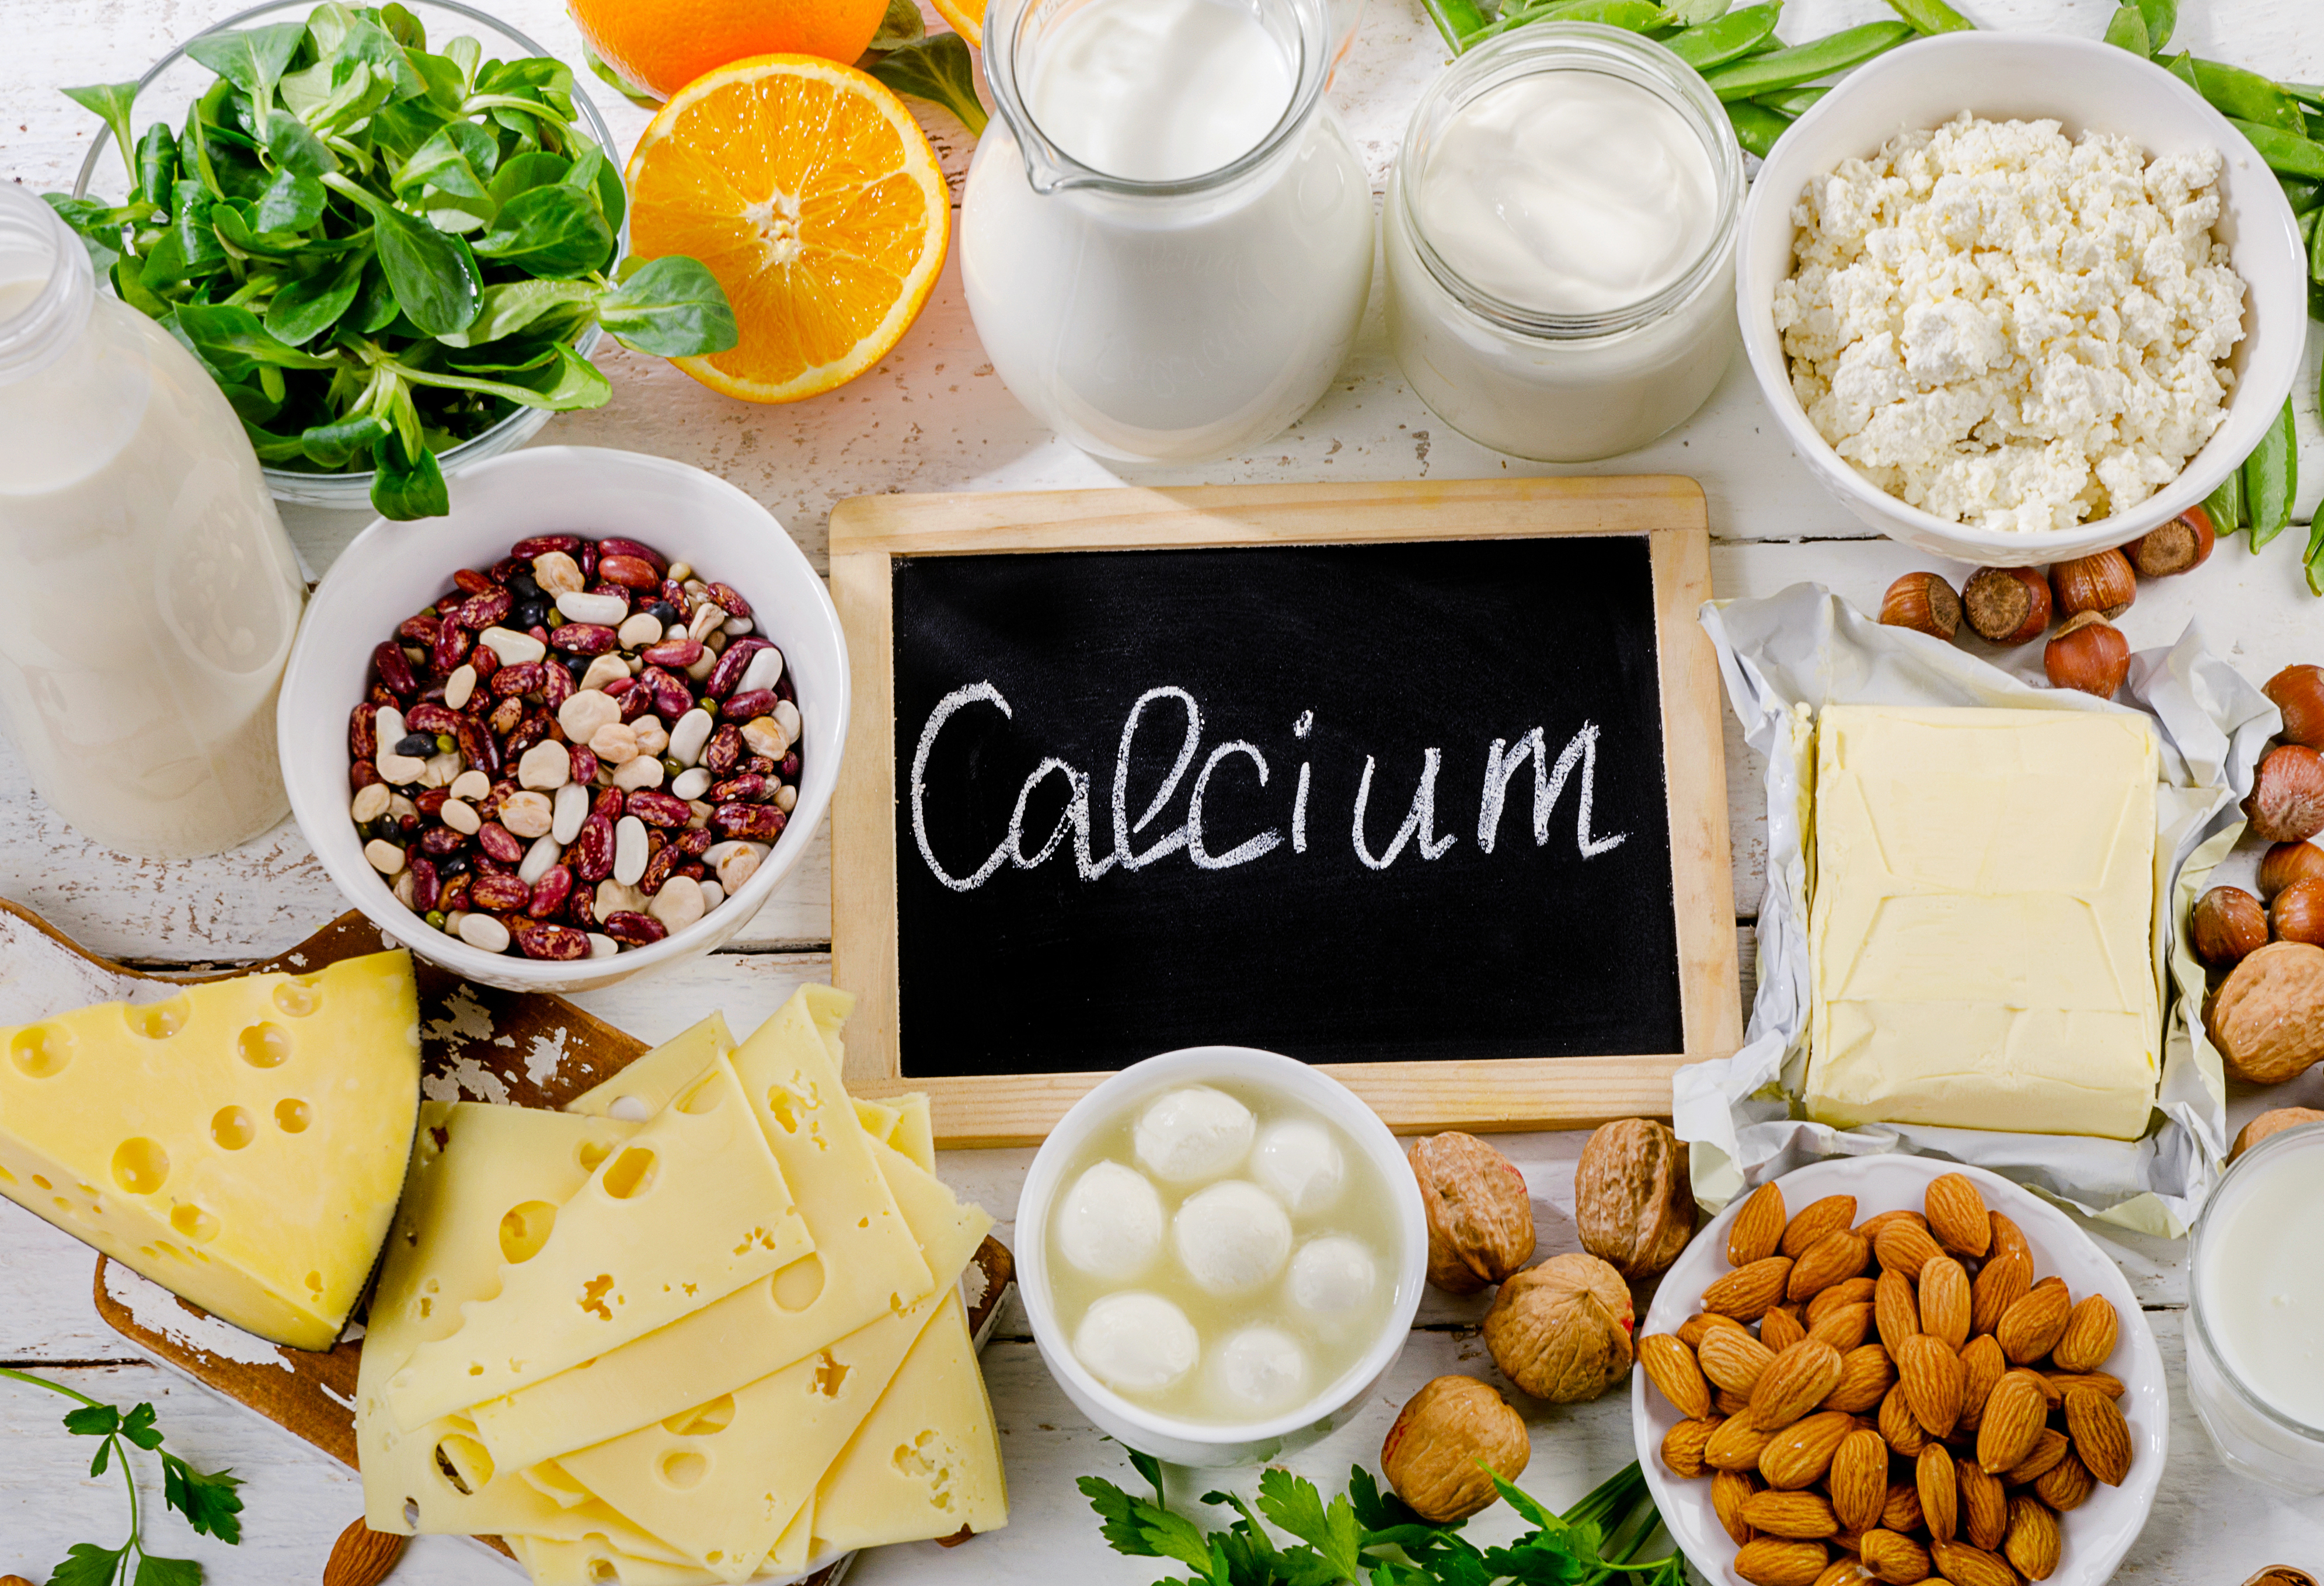 Calcium and bone health